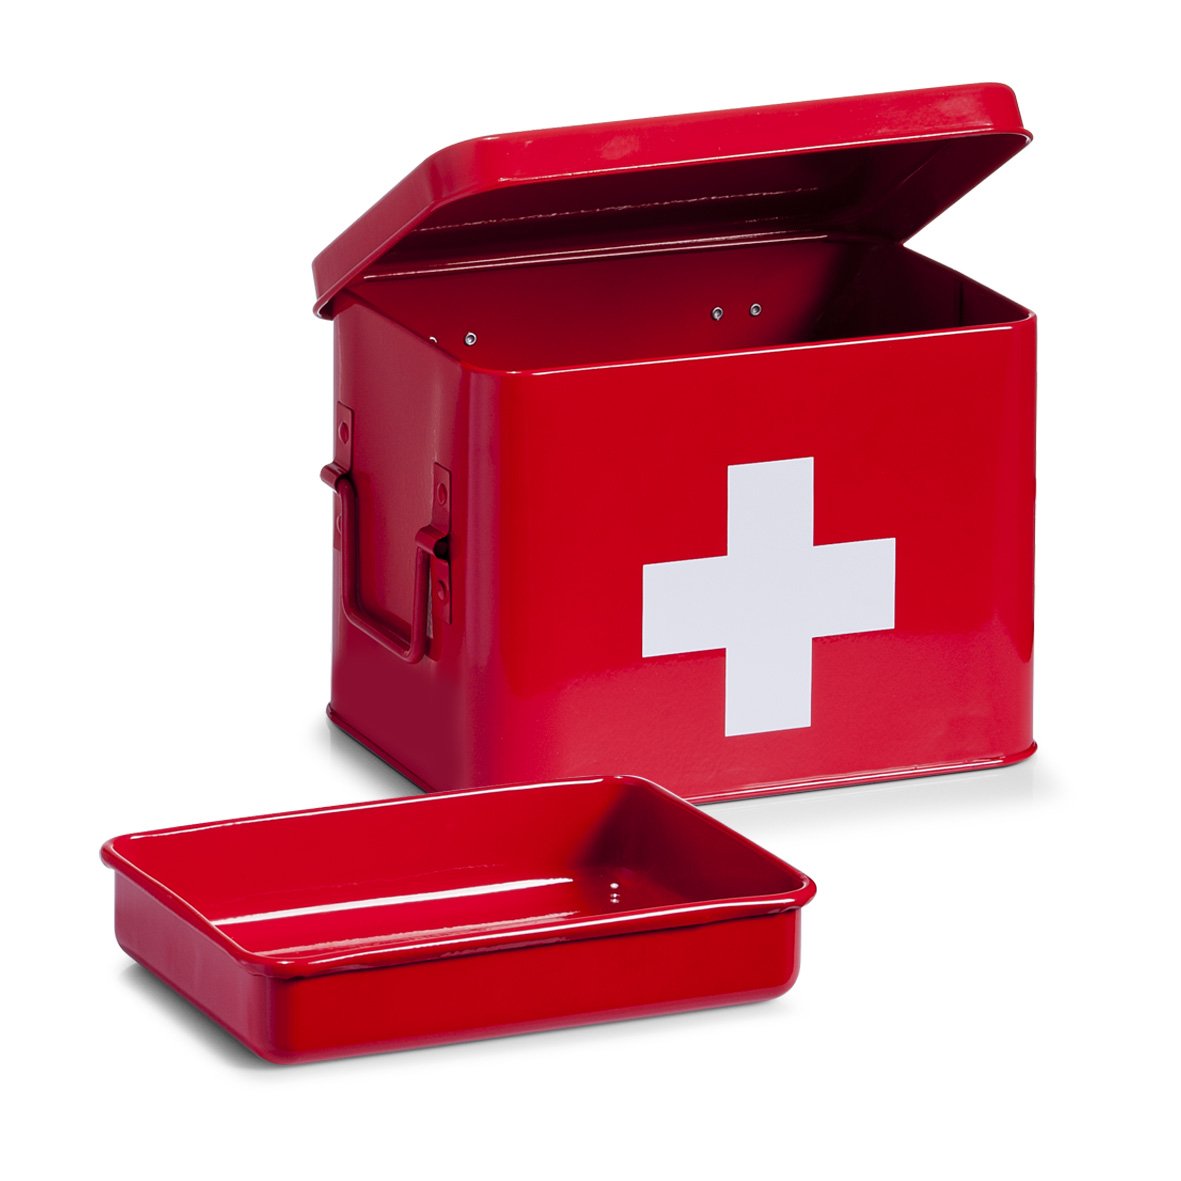 Sir Safety System Zeller 18115 Medizinbox, Metall, rot, ca. 21,5 x 16 x 16 cm, Erste-Hilfe-Kasten, Arznei-Aufbewahrung, Hausapotheke